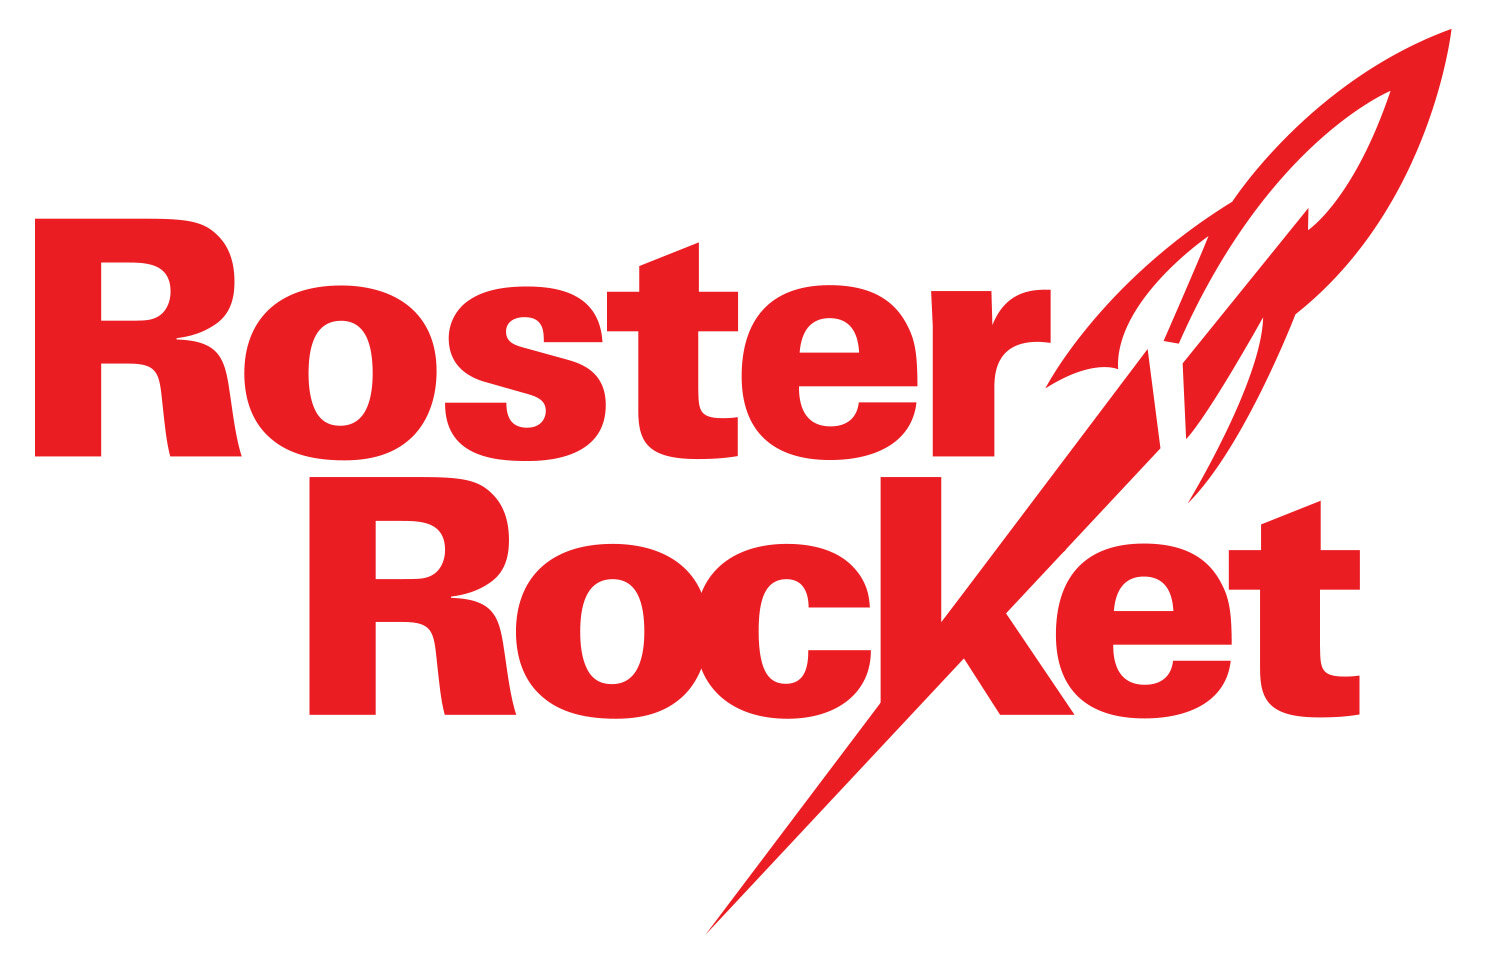 Roster Rocket